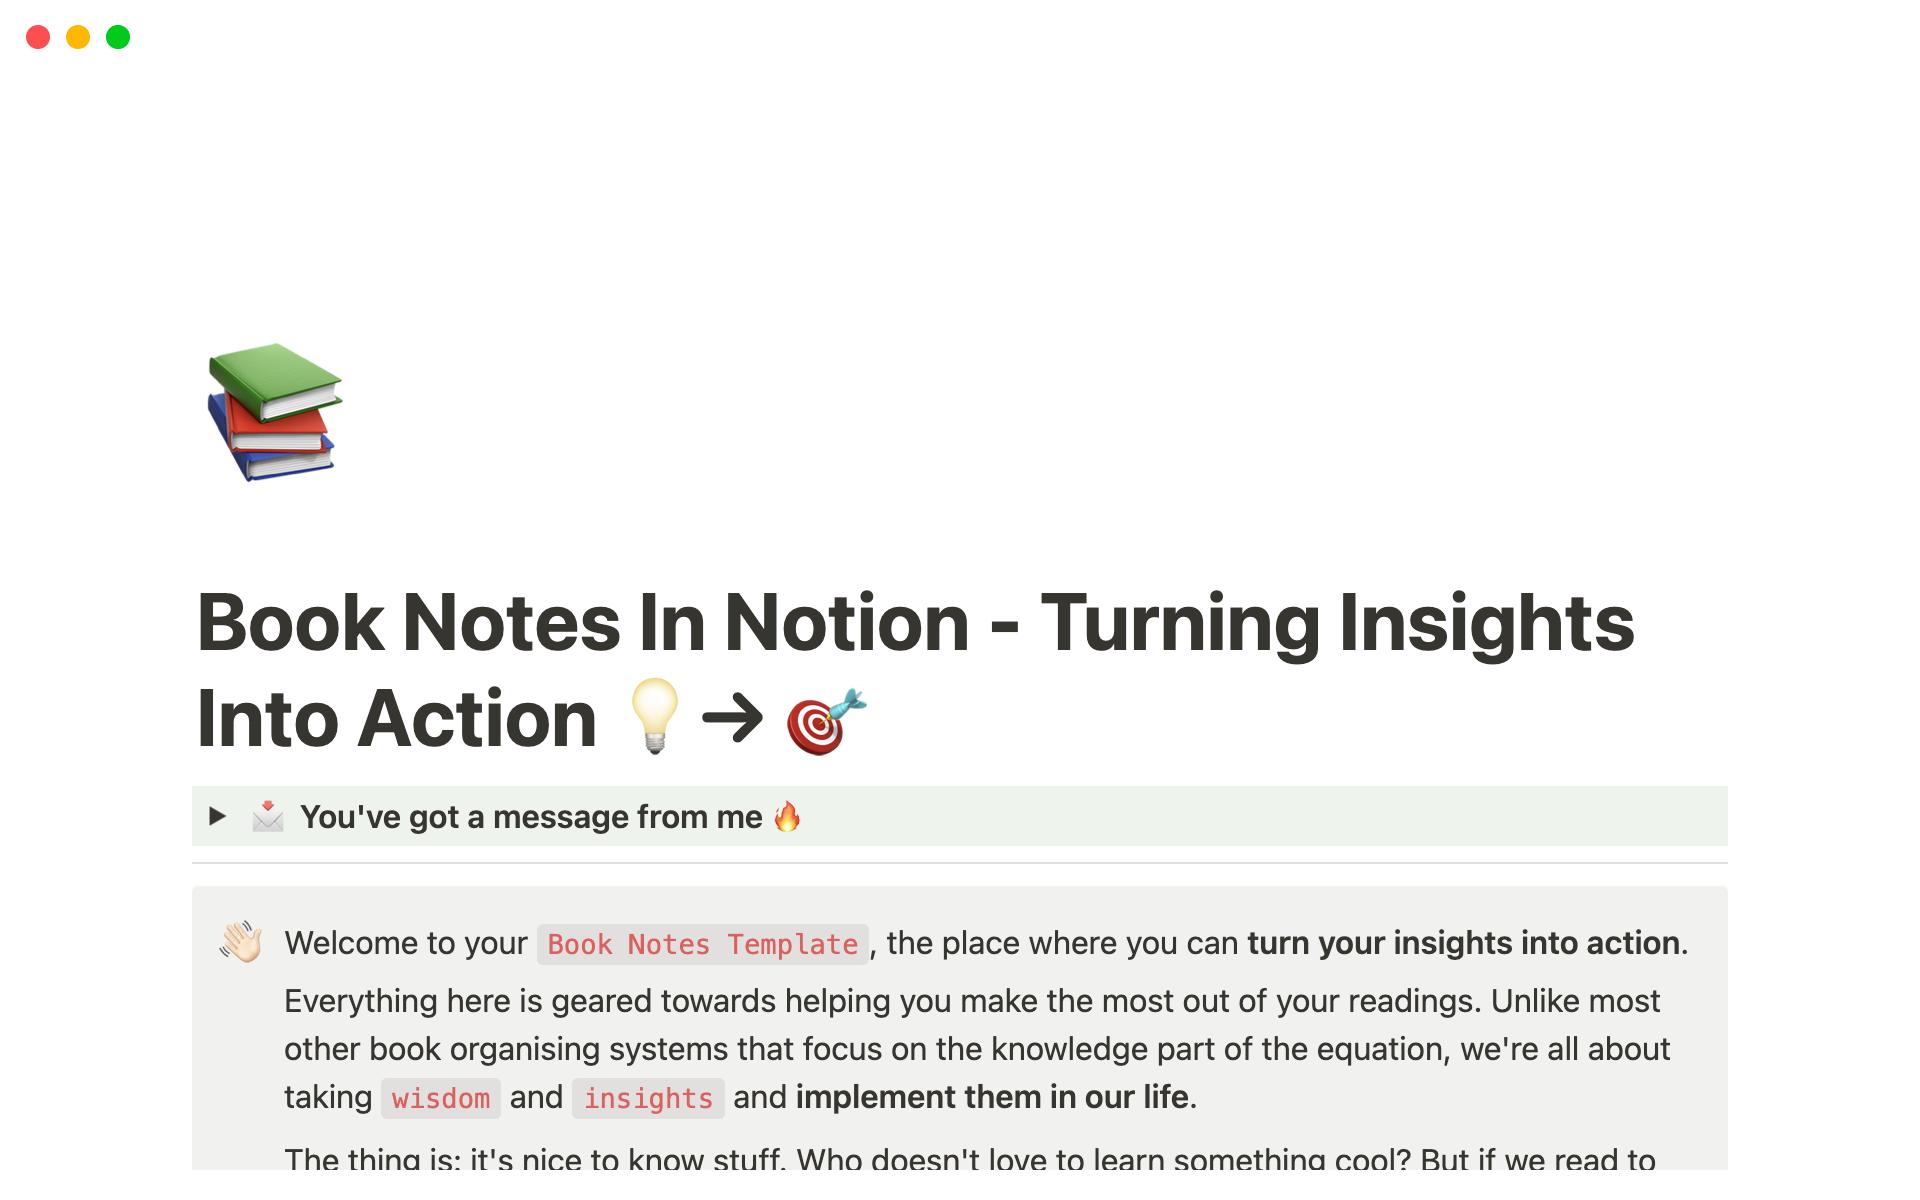 Vista previa de plantilla para Book Notes for Notion